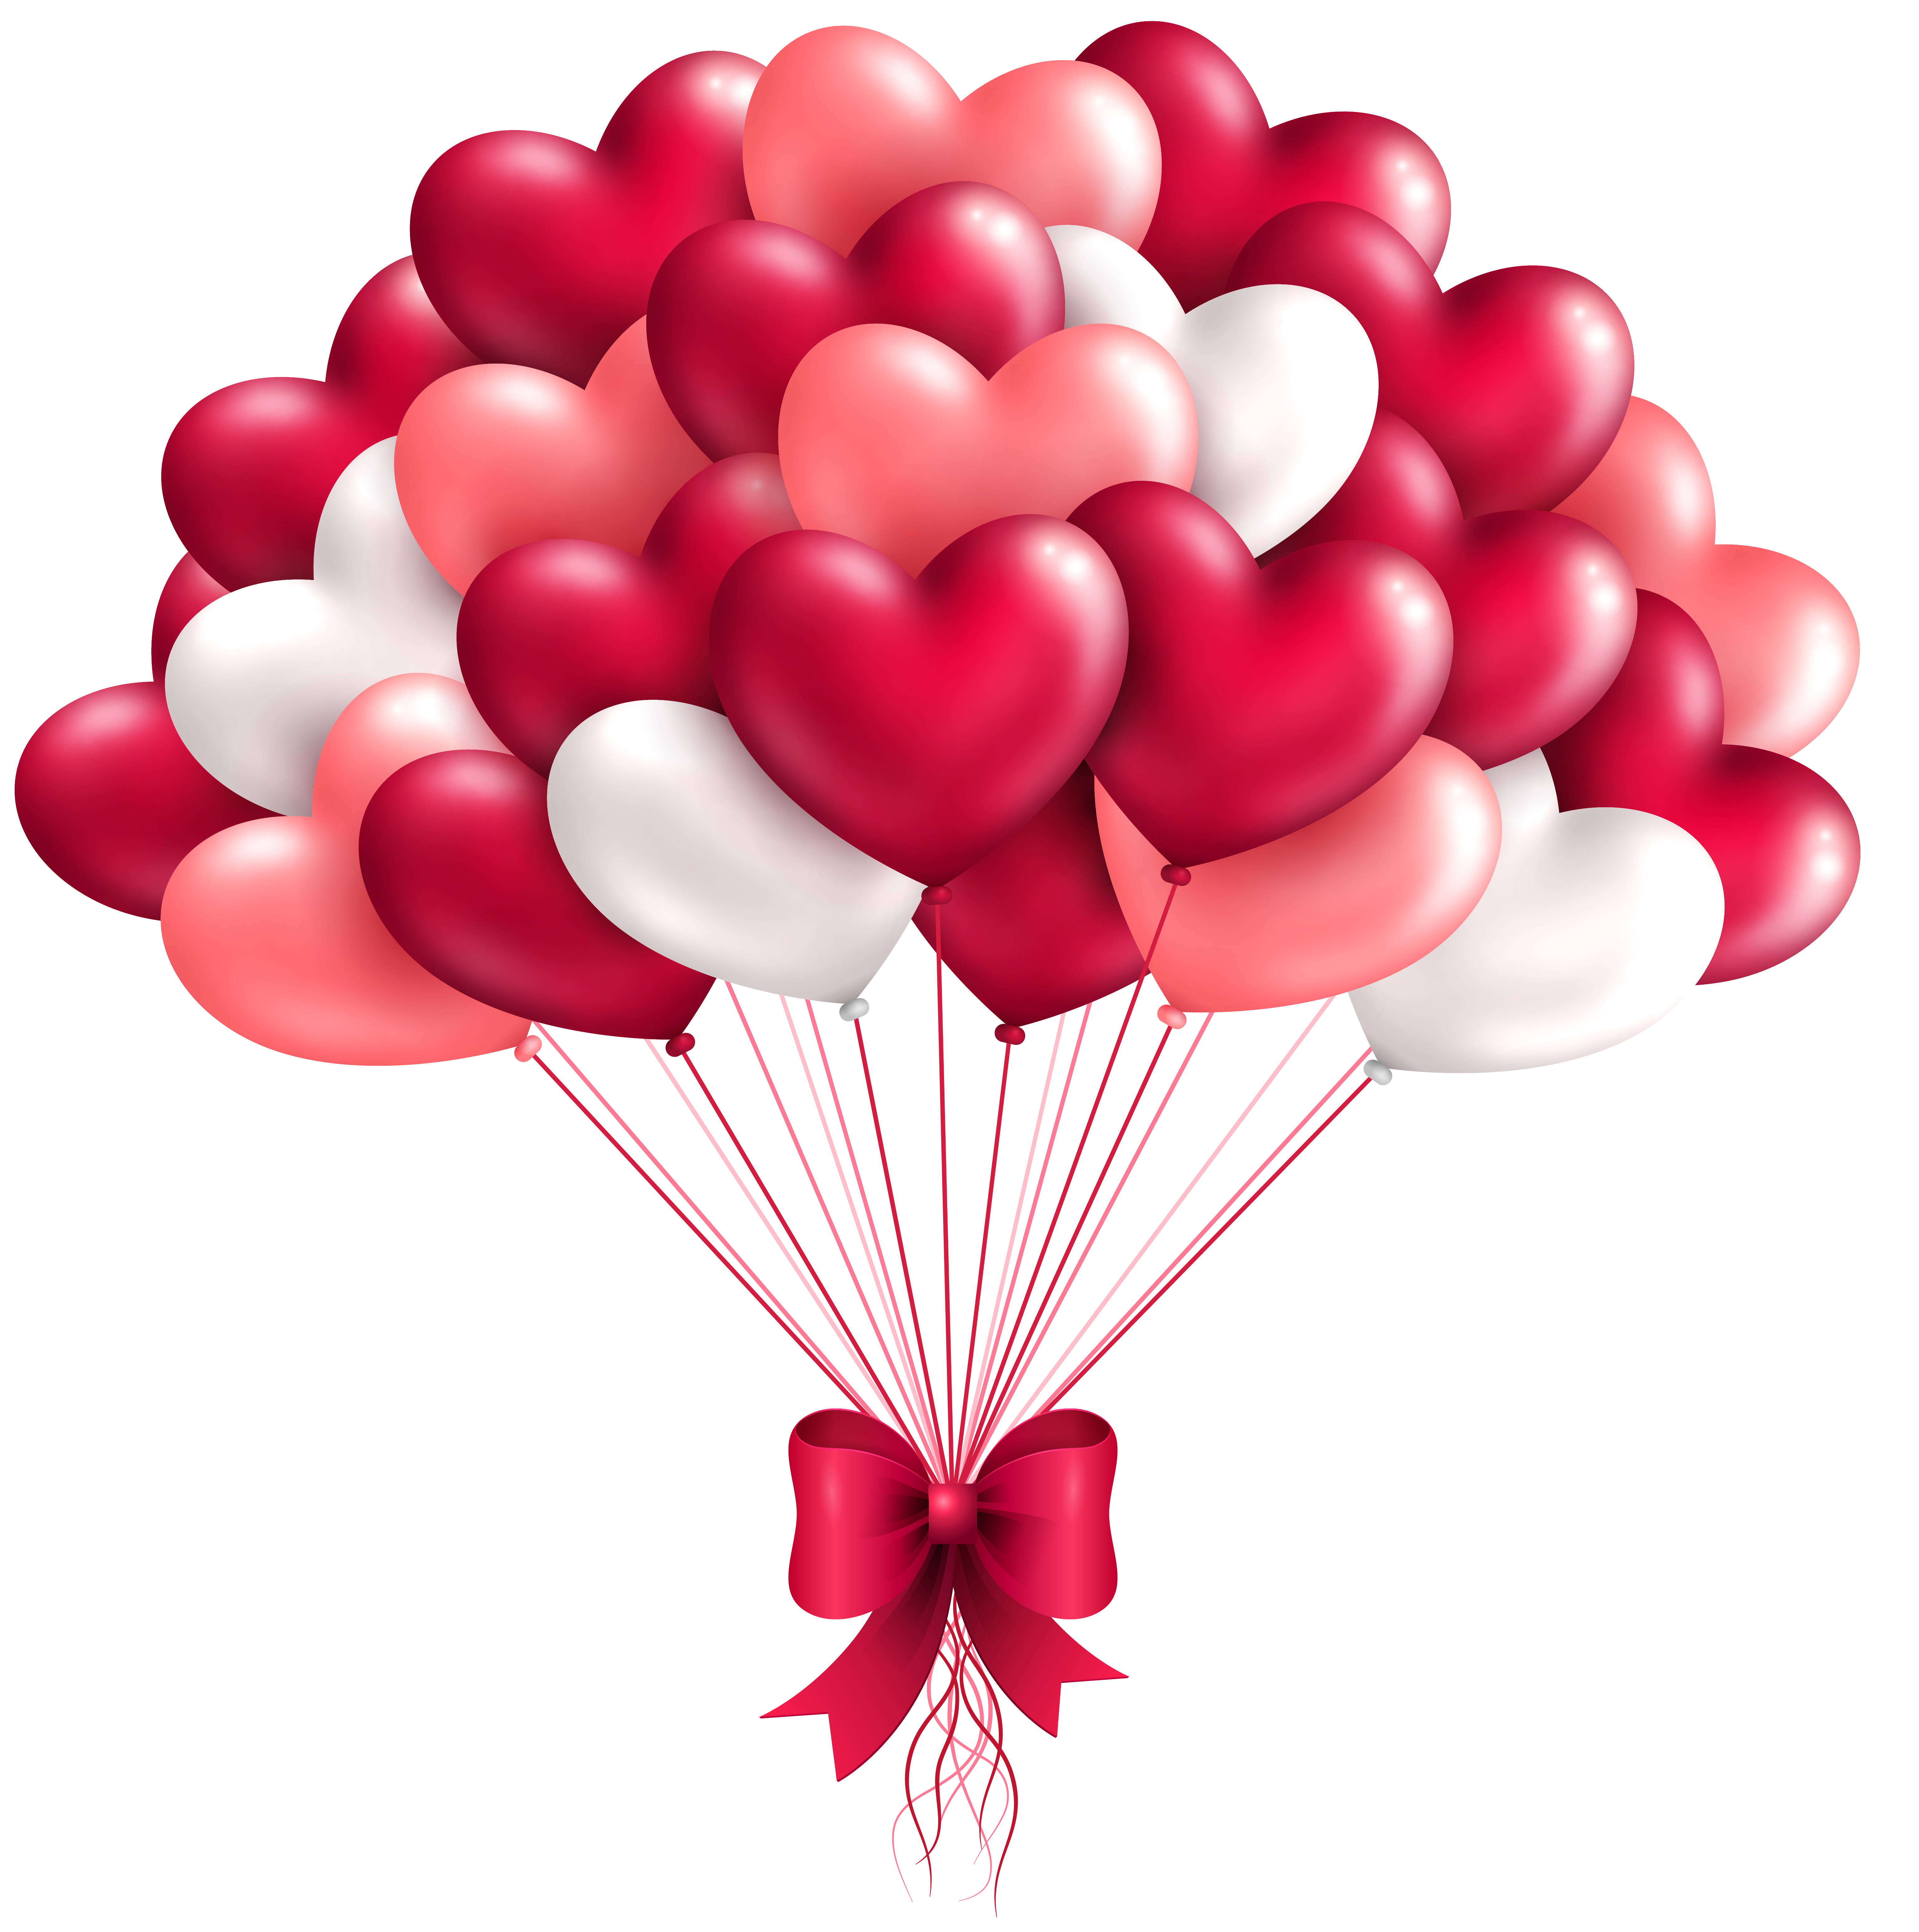 clipart heart shaped balloons - photo #21